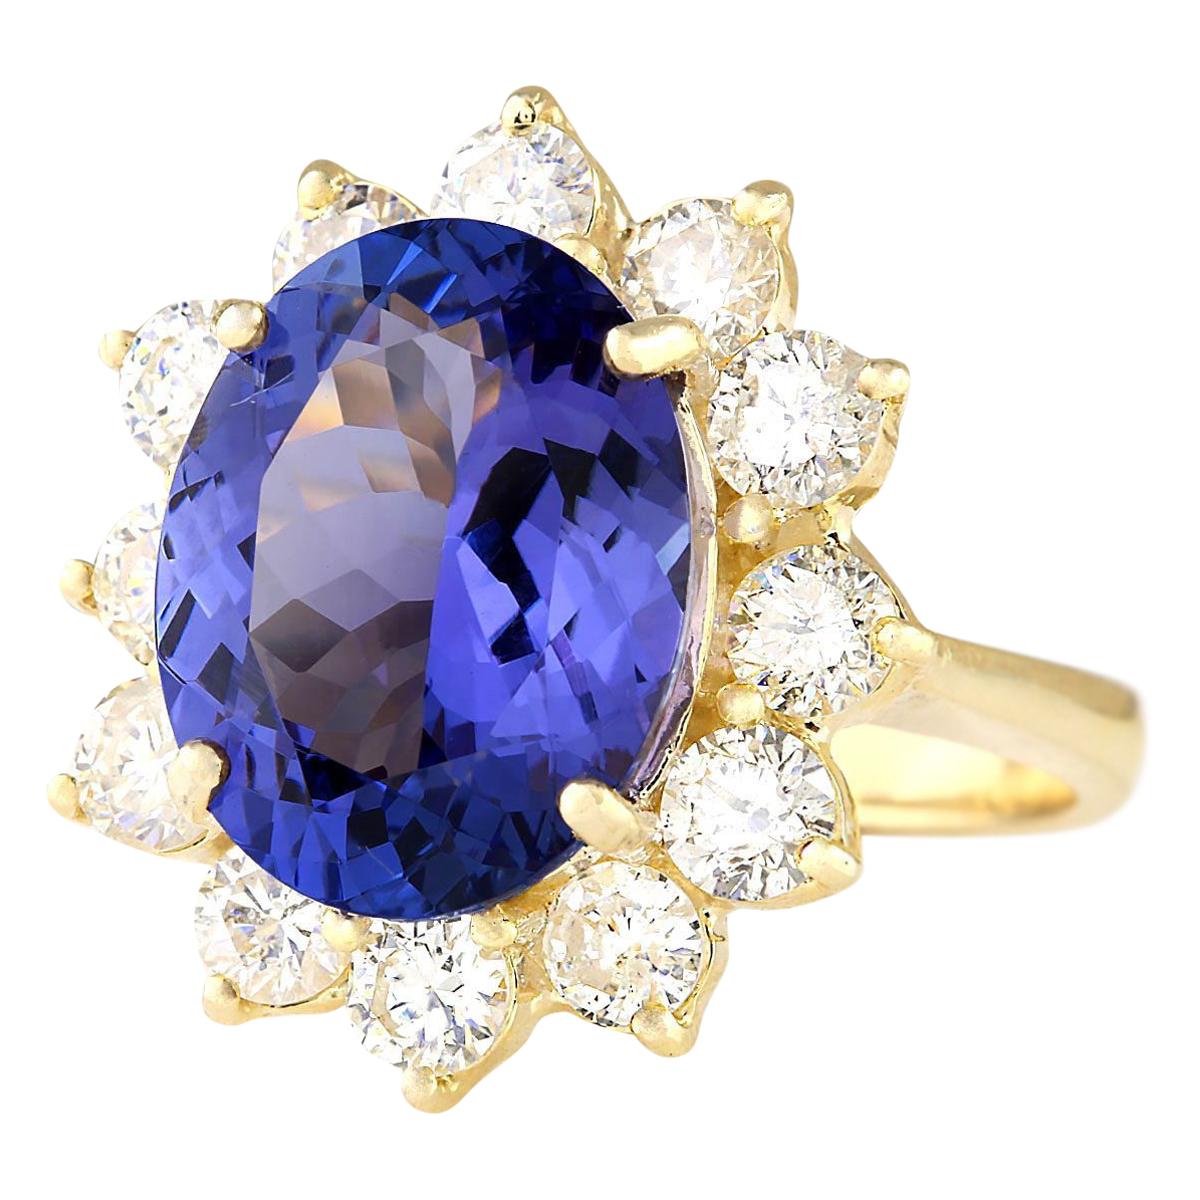 10.50 Carat Tanzanite 14 Karat Yellow Gold Diamond Ring
Stamped: 14K Yellow Gold
Total Ring Weight: 7.3 Grams
Total Natural Tanzanite Weight is 7.50 Carat (Measures: 14.00x10.00 mm)
Color: Blue
Total Natural Diamond Weight is 3.00 Carat
Color: F-G,